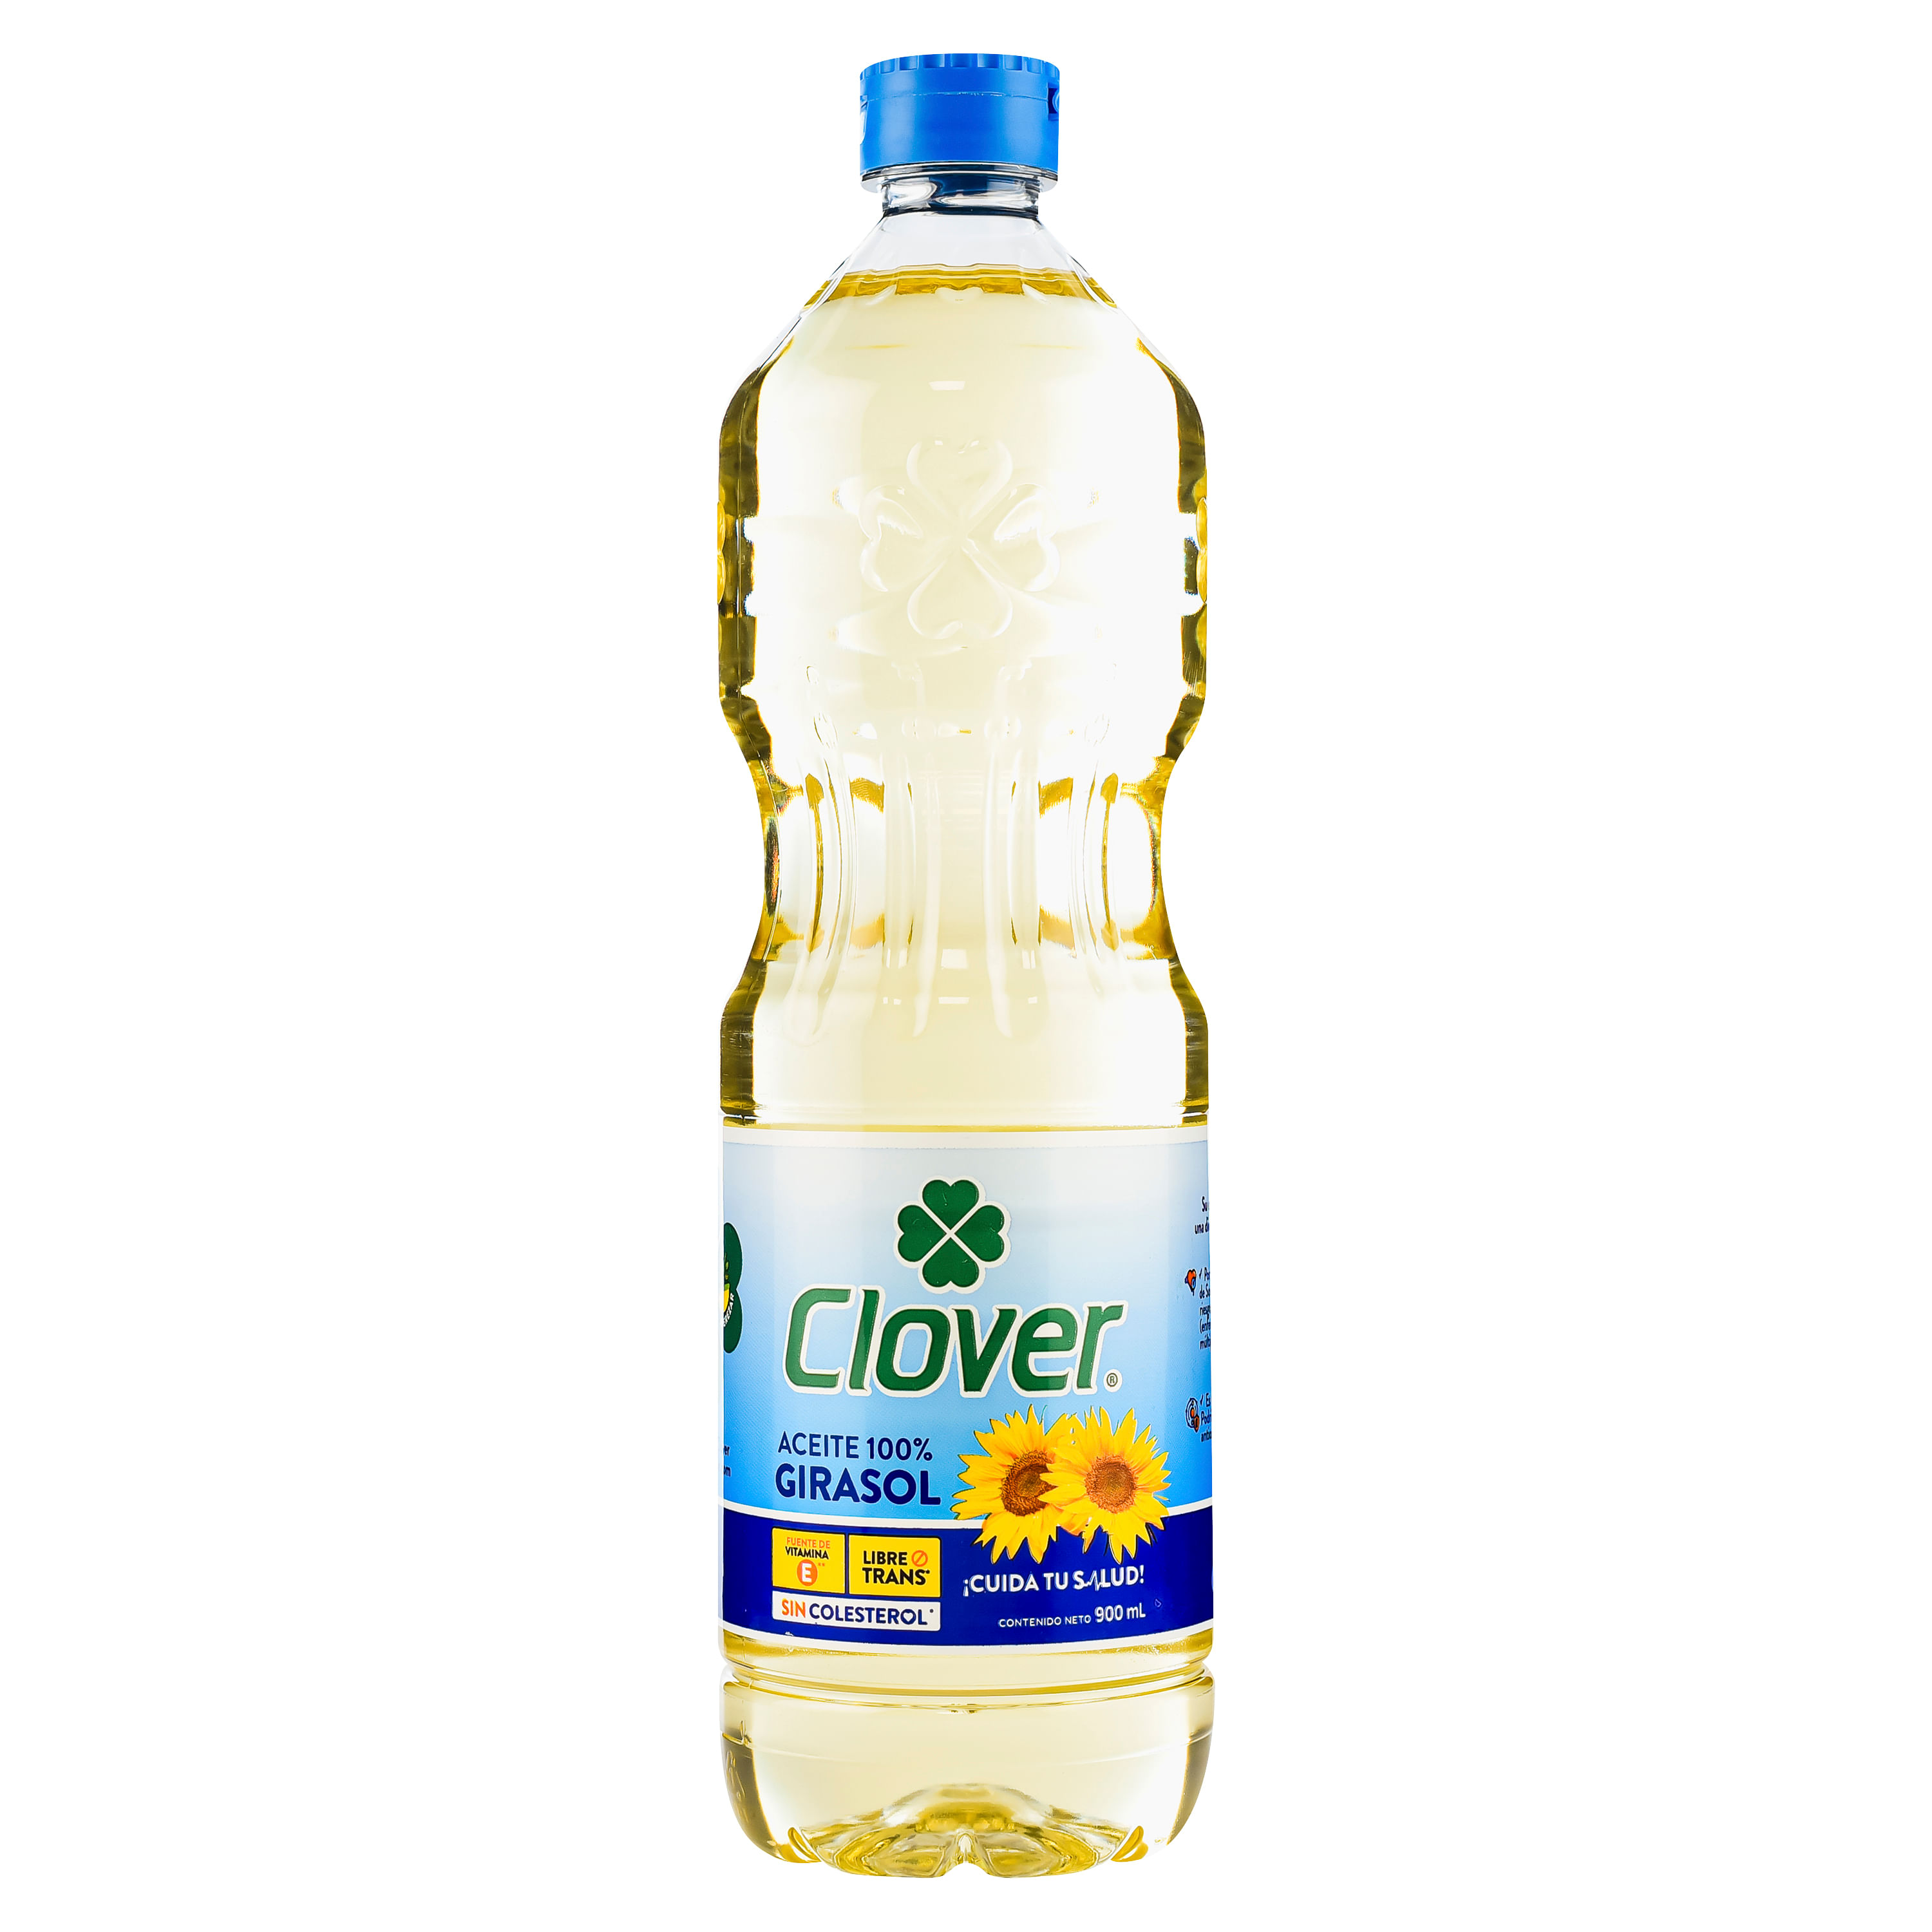 Aceite-Clover-Girasol-900ml-1-86711